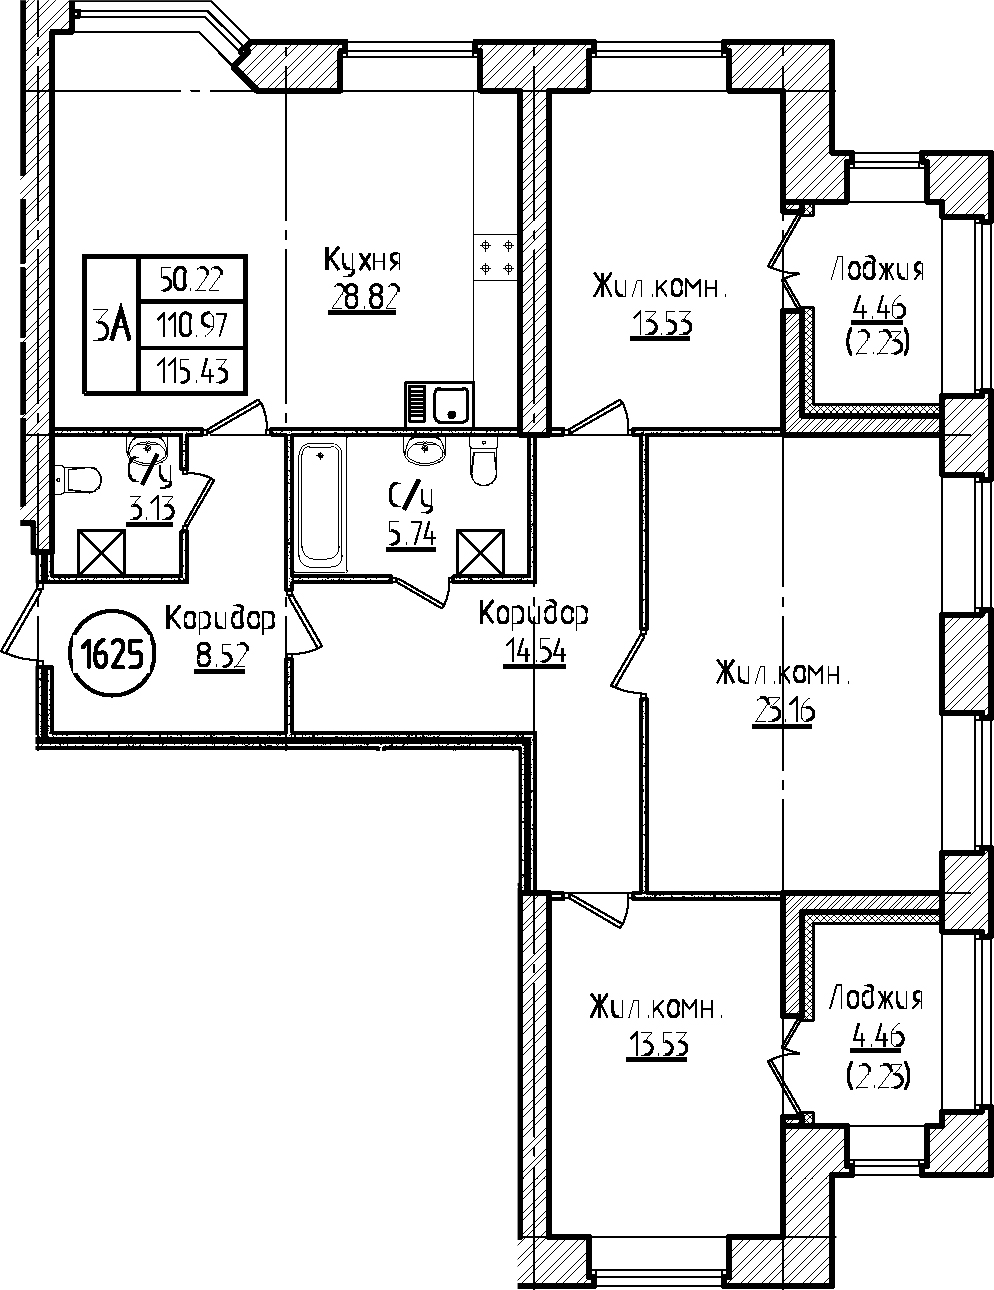 3-комнатная, 115.43 м²– 2